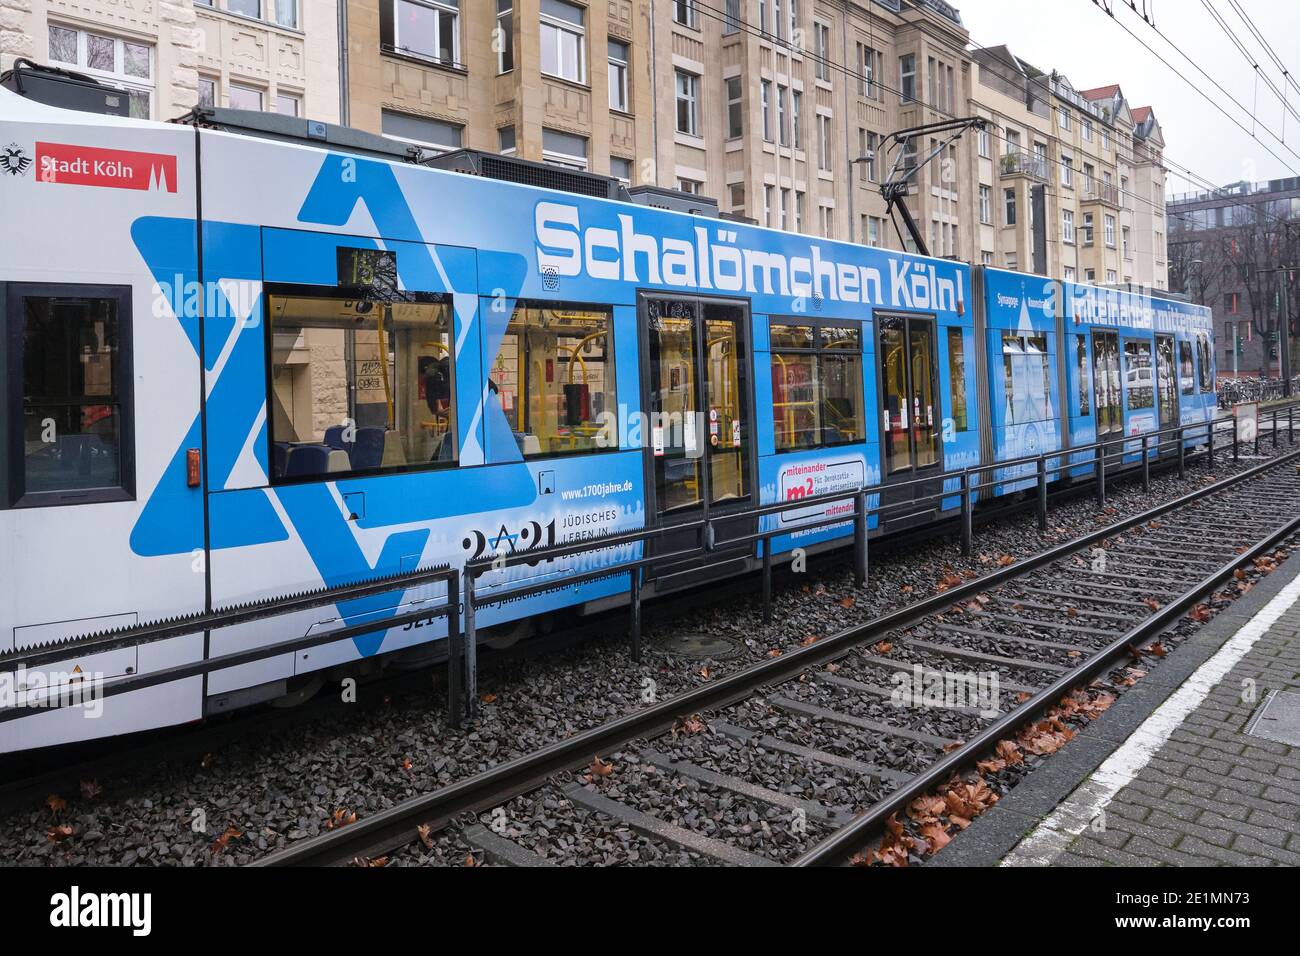 Con un treno appositamente progettato, la città di Colonia, la comunità sinagoga e la compagnia di trasporti pubblici stanno creando un esempio di democrazia Foto Stock